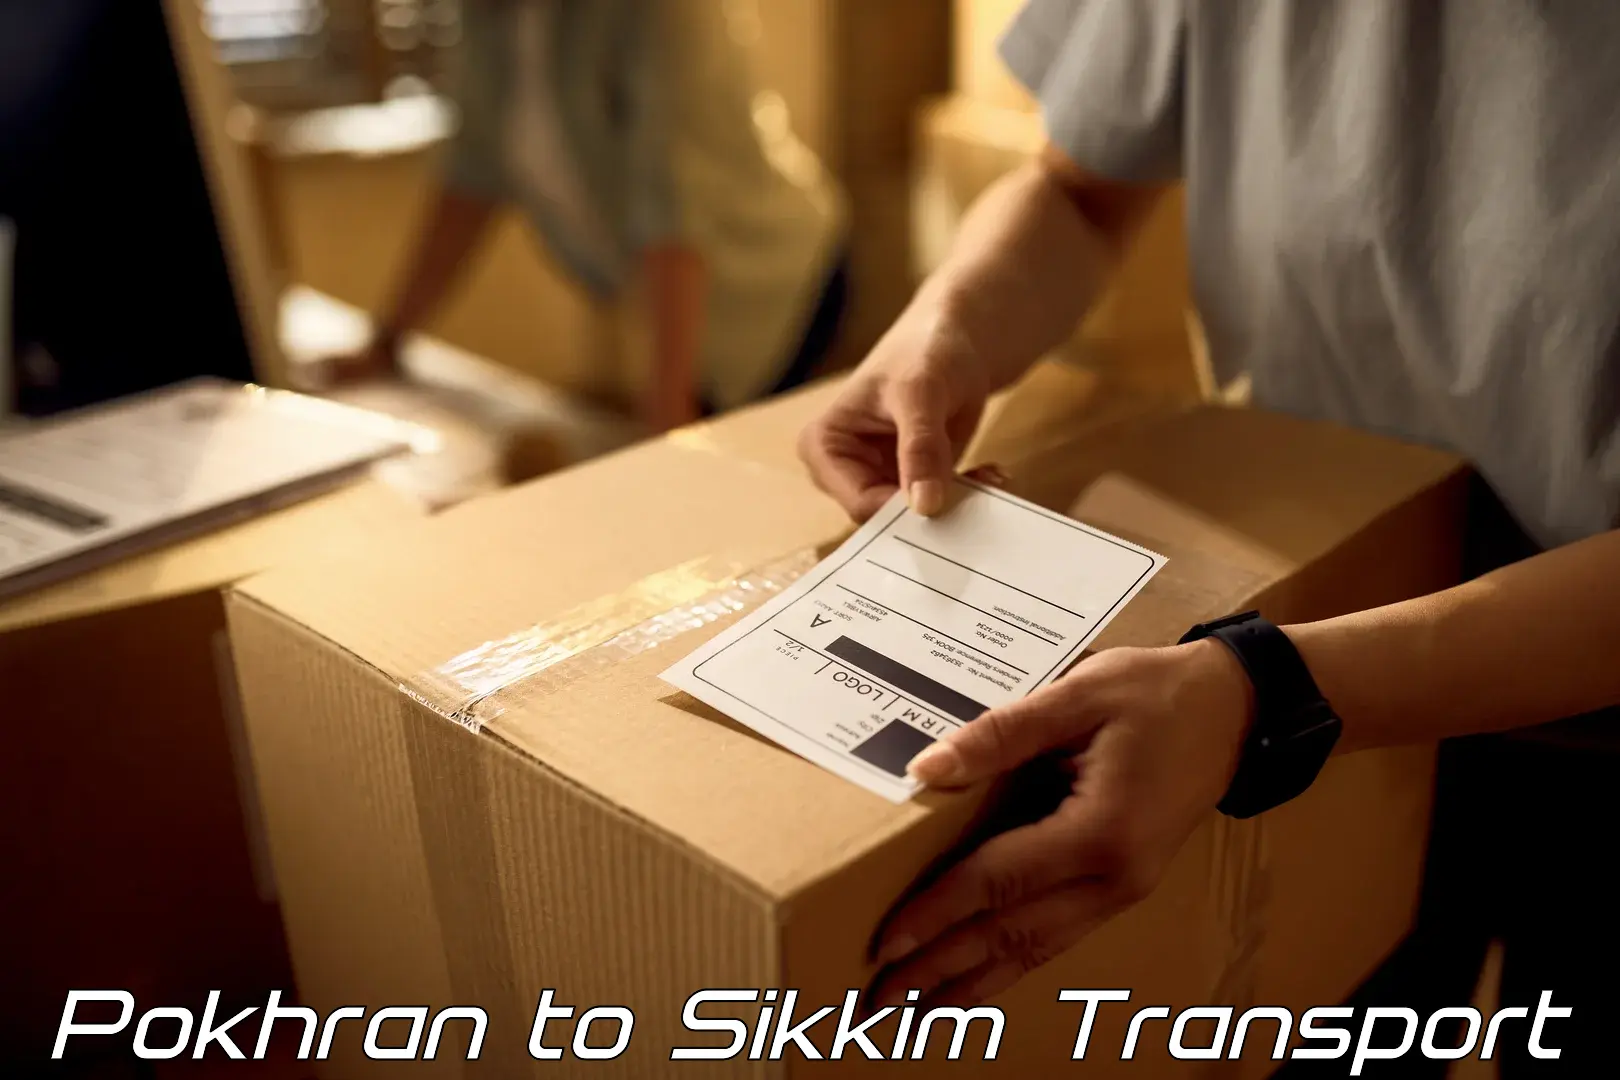 Pick up transport service Pokhran to NIT Sikkim